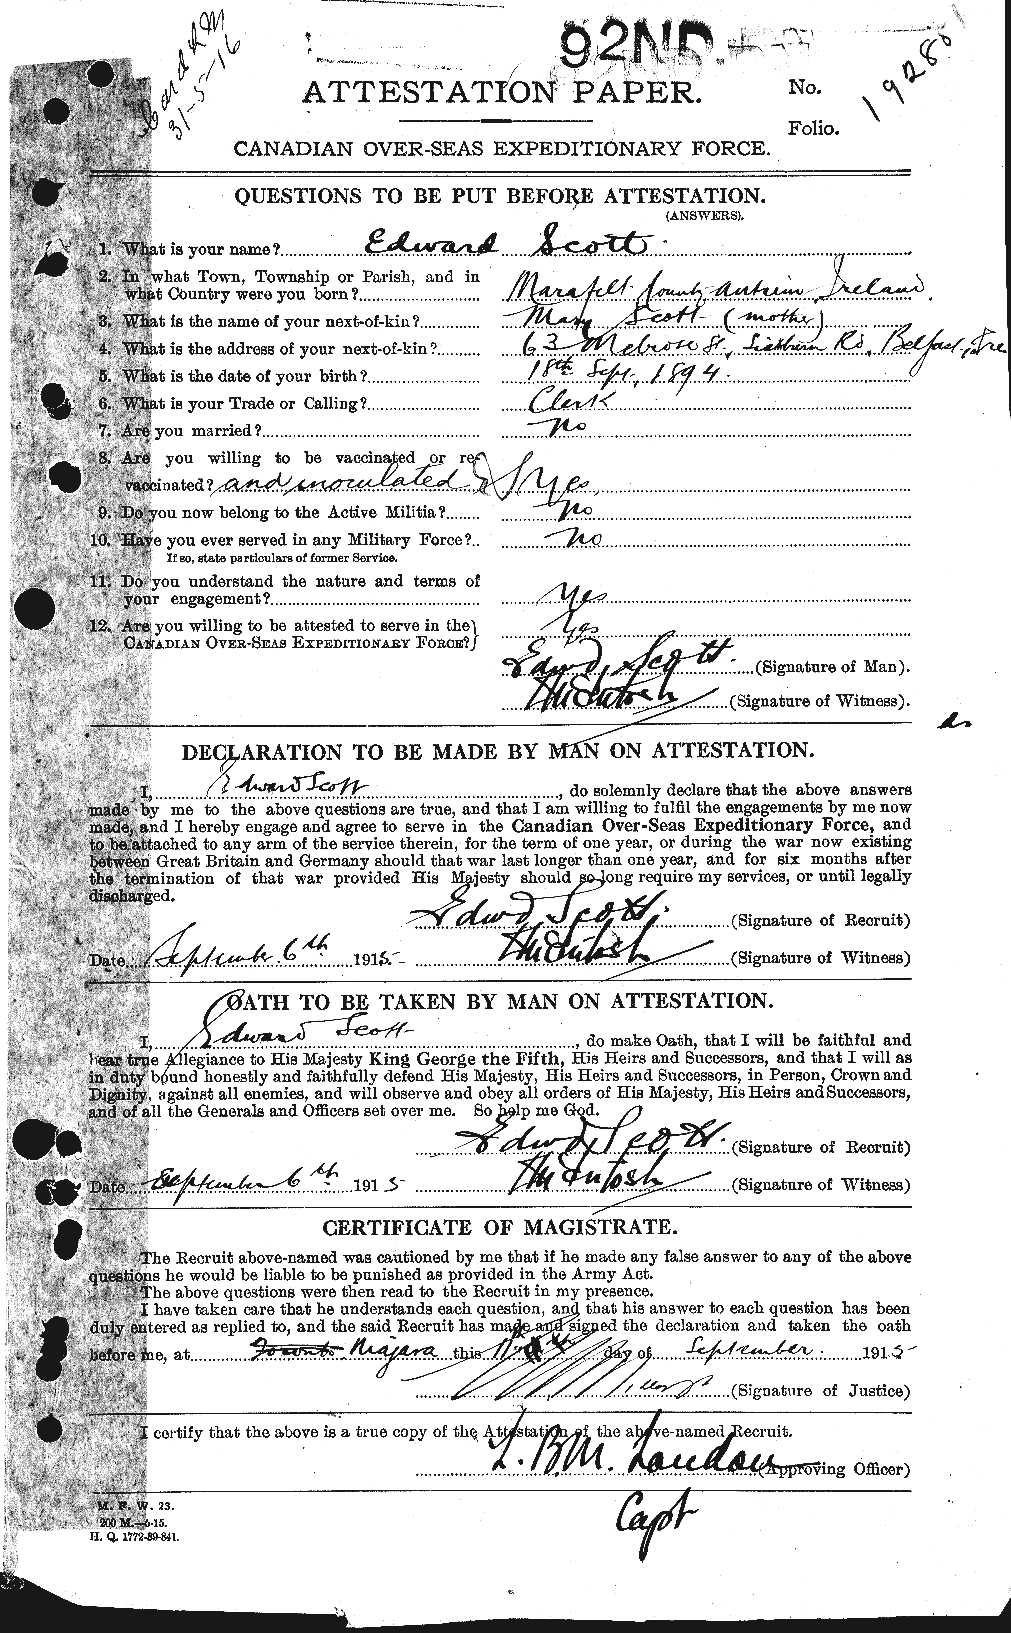 Dossiers du Personnel de la Première Guerre mondiale - CEC 085323a